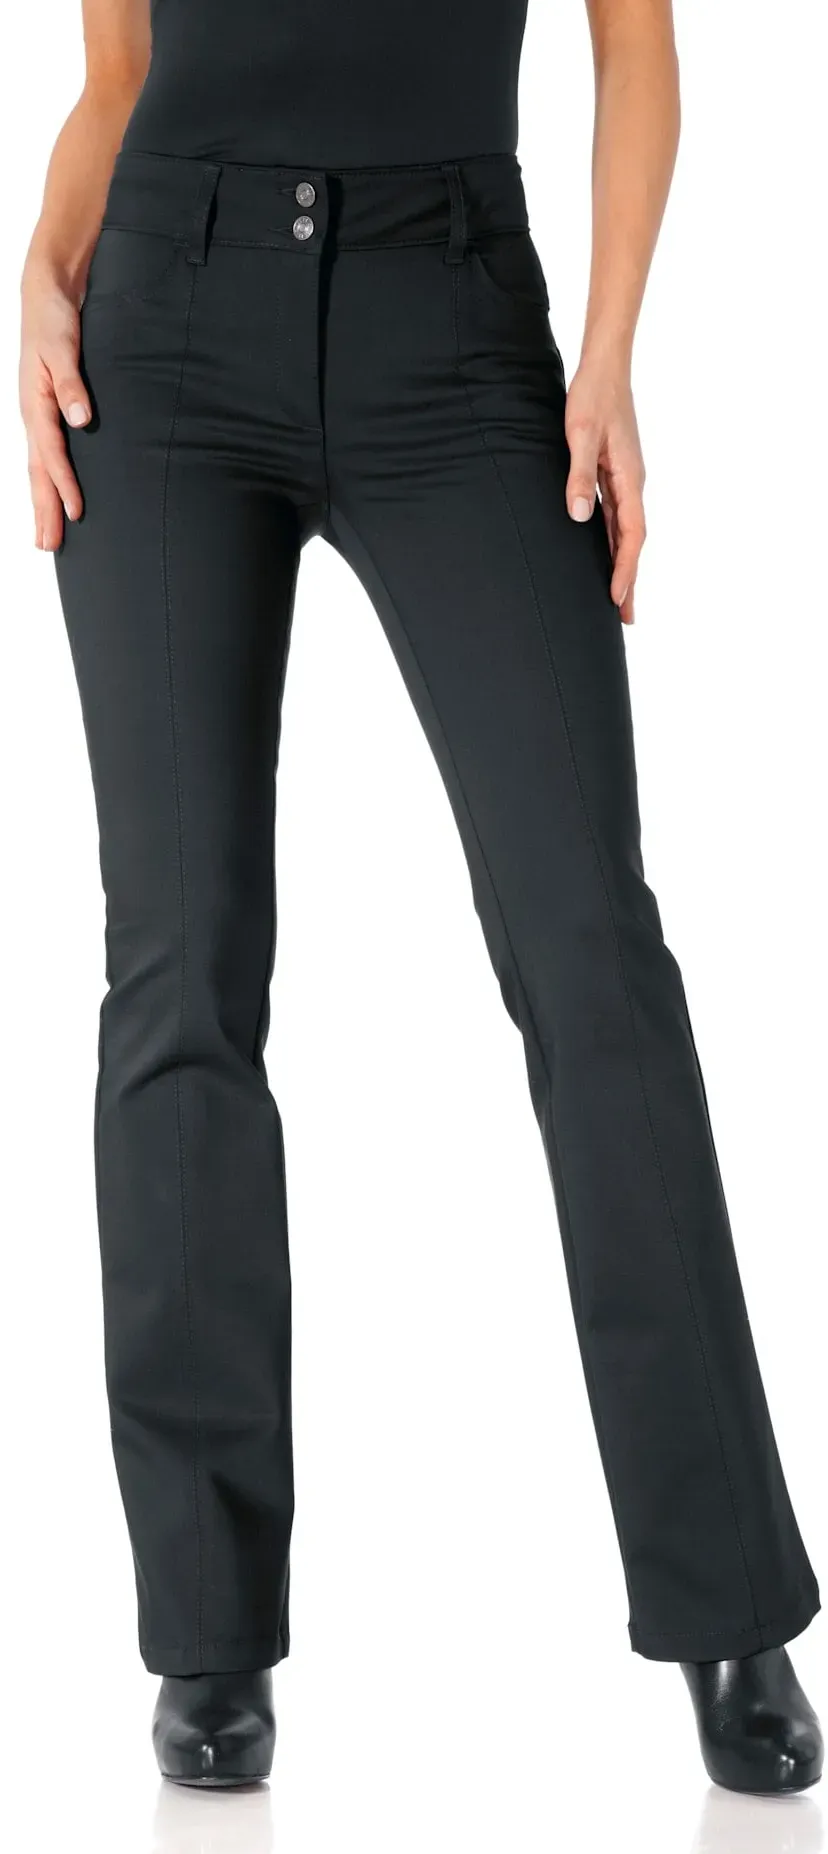 Bootcuthose HEINE Gr. 17, Kurzgrößen, schwarz Damen Hosen Ausgestellte